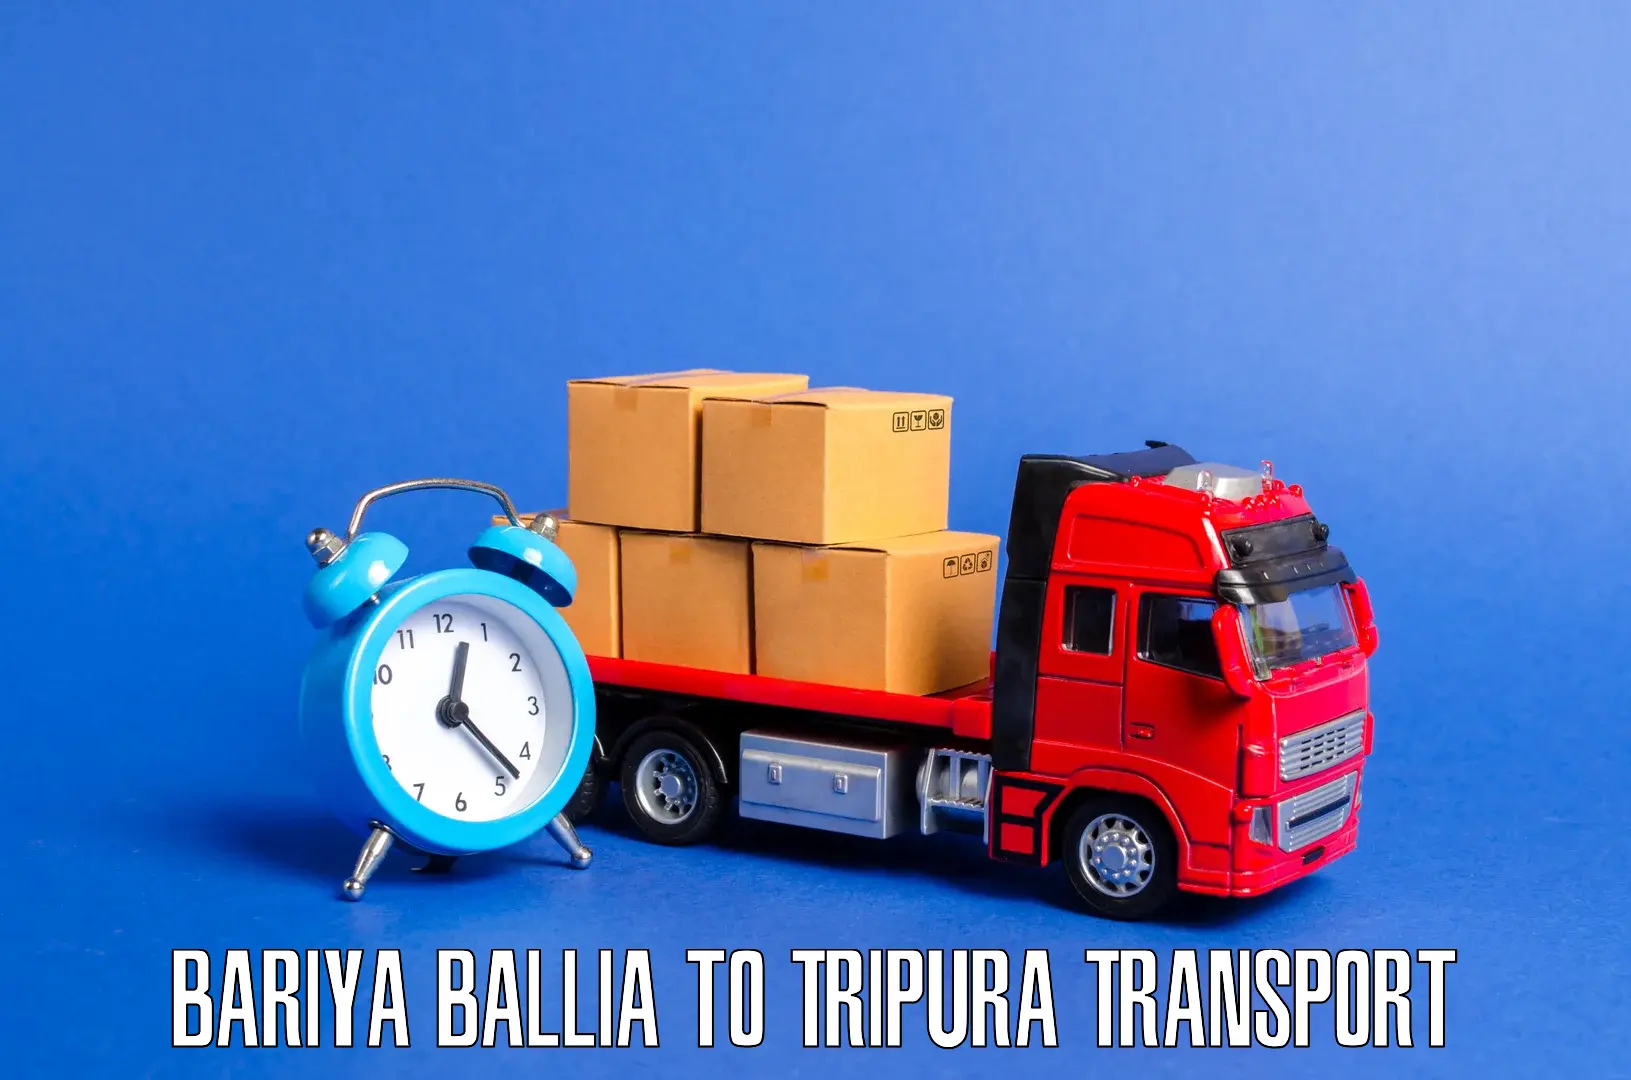 Furniture transport service Bariya Ballia to Manu Bazar